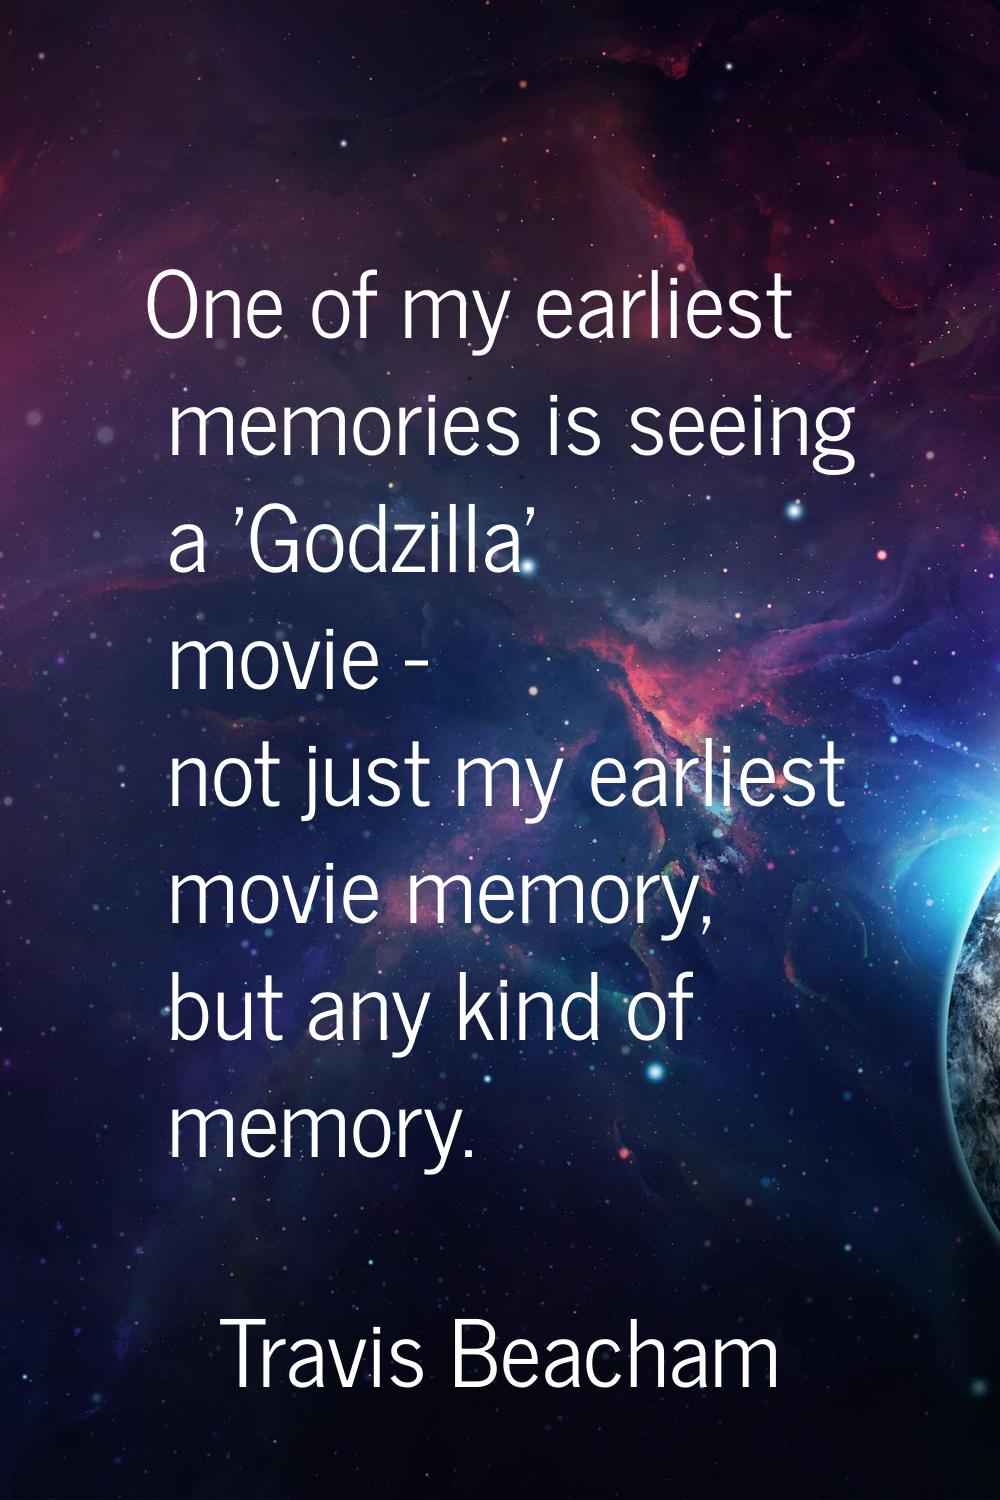 One of my earliest memories is seeing a 'Godzilla' movie - not just my earliest movie memory, but a